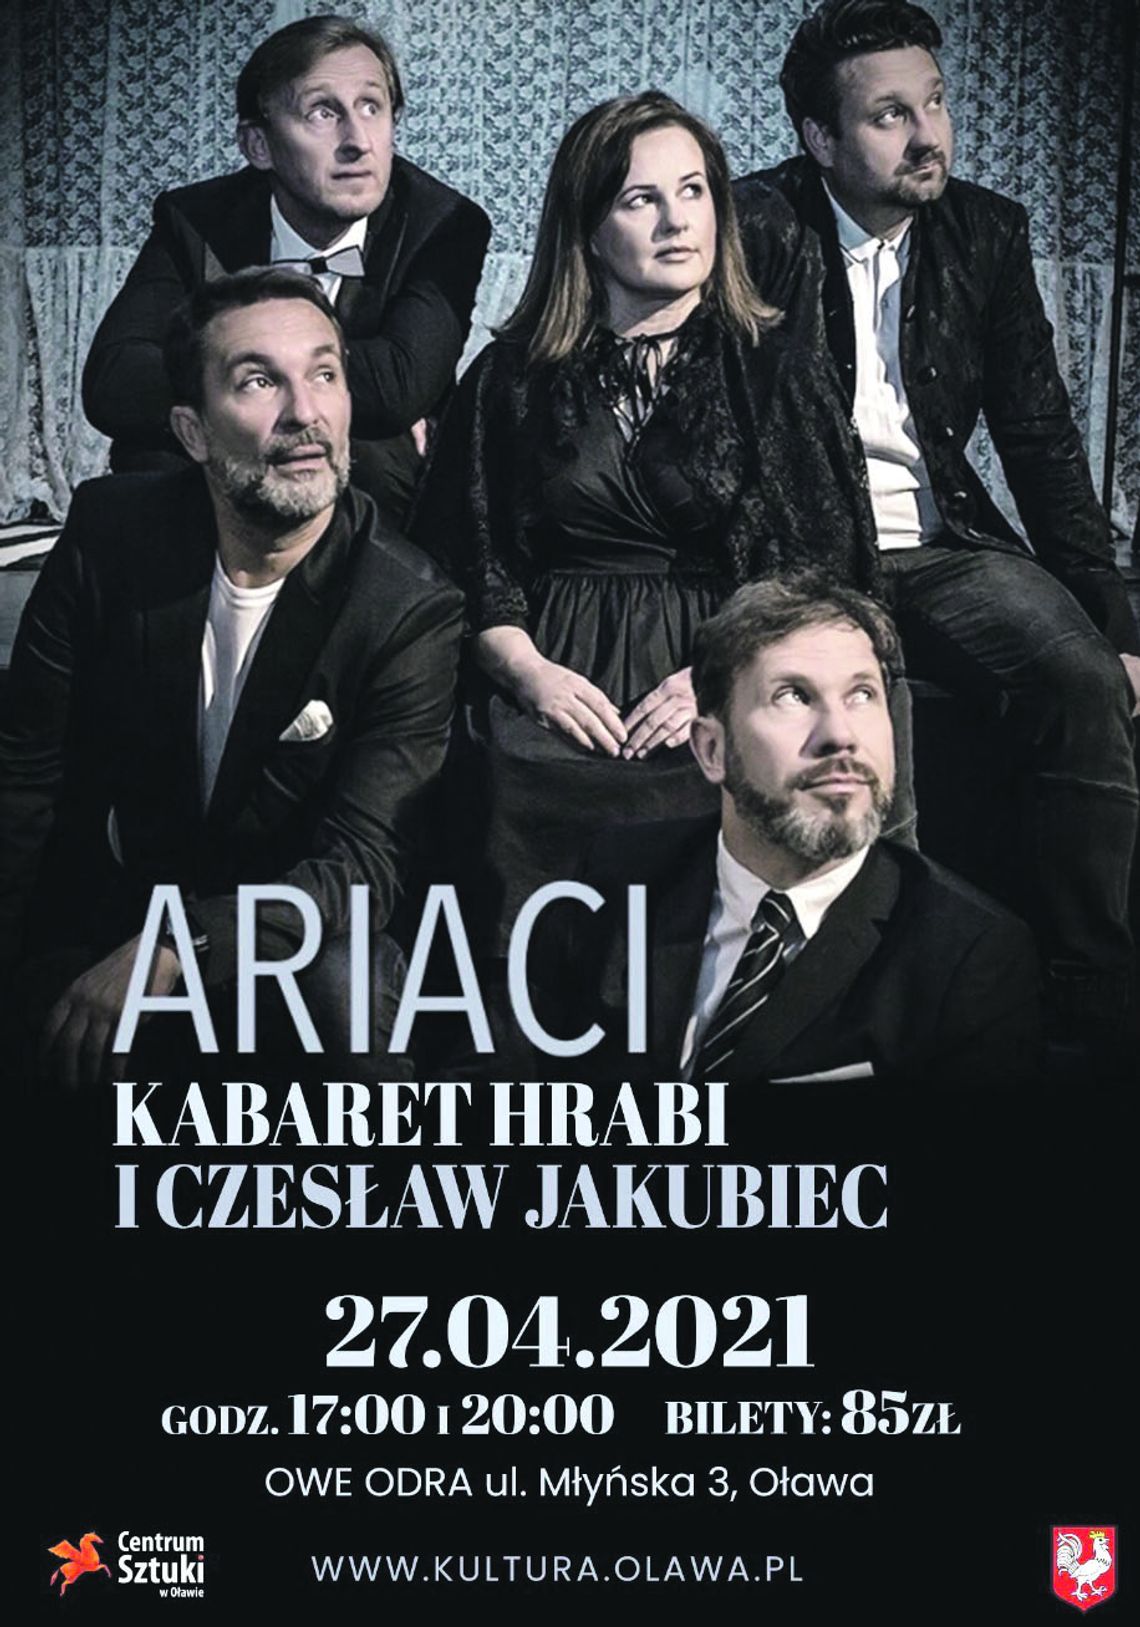 ARIACI, czyli Kabaret Hrabi i Czesław Jakubiec